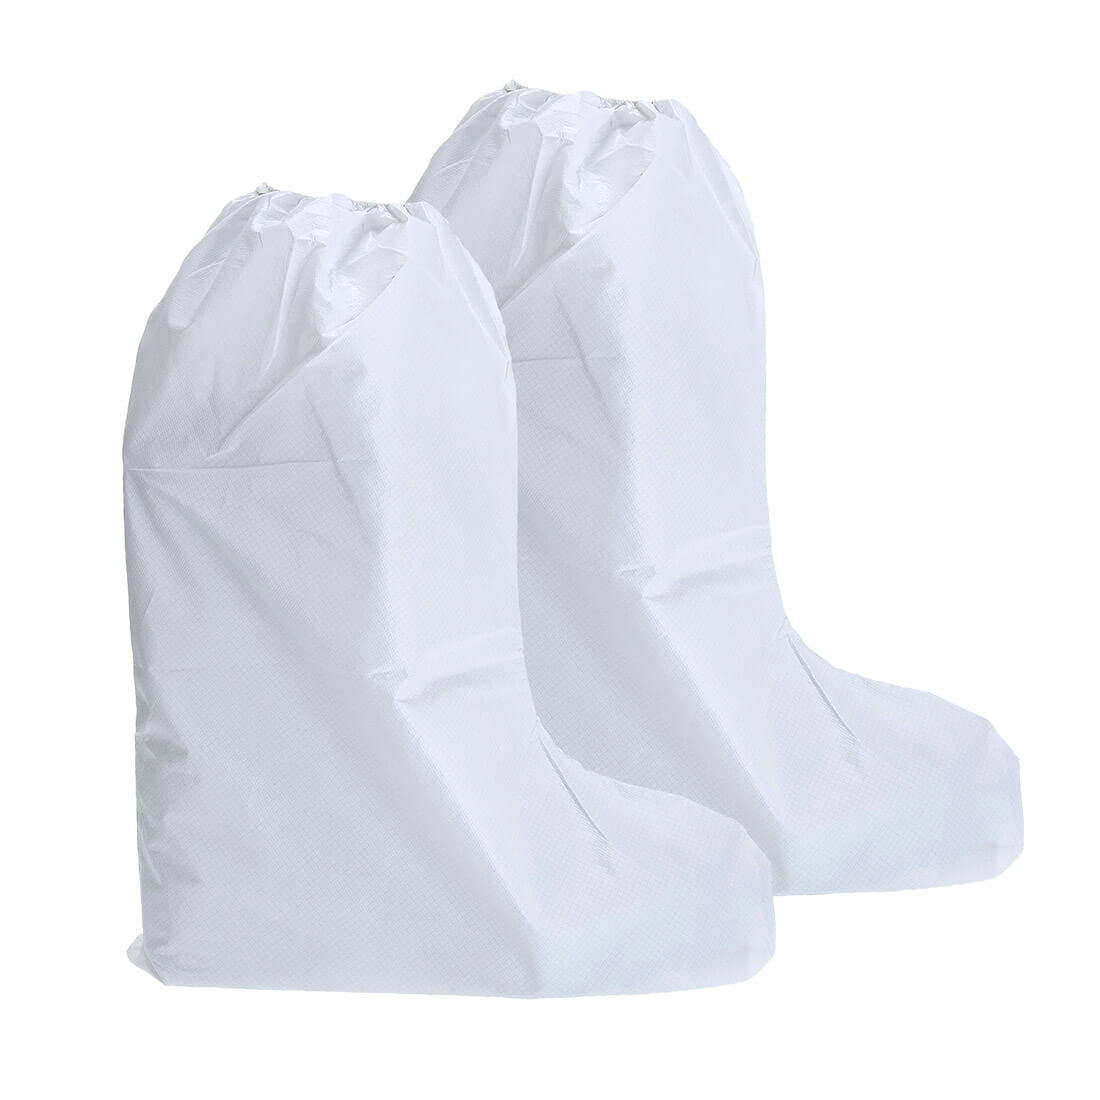 Copri stivali in BizTex® Microporoso tipo 6PB - Equipaggiamenti di protezione personale